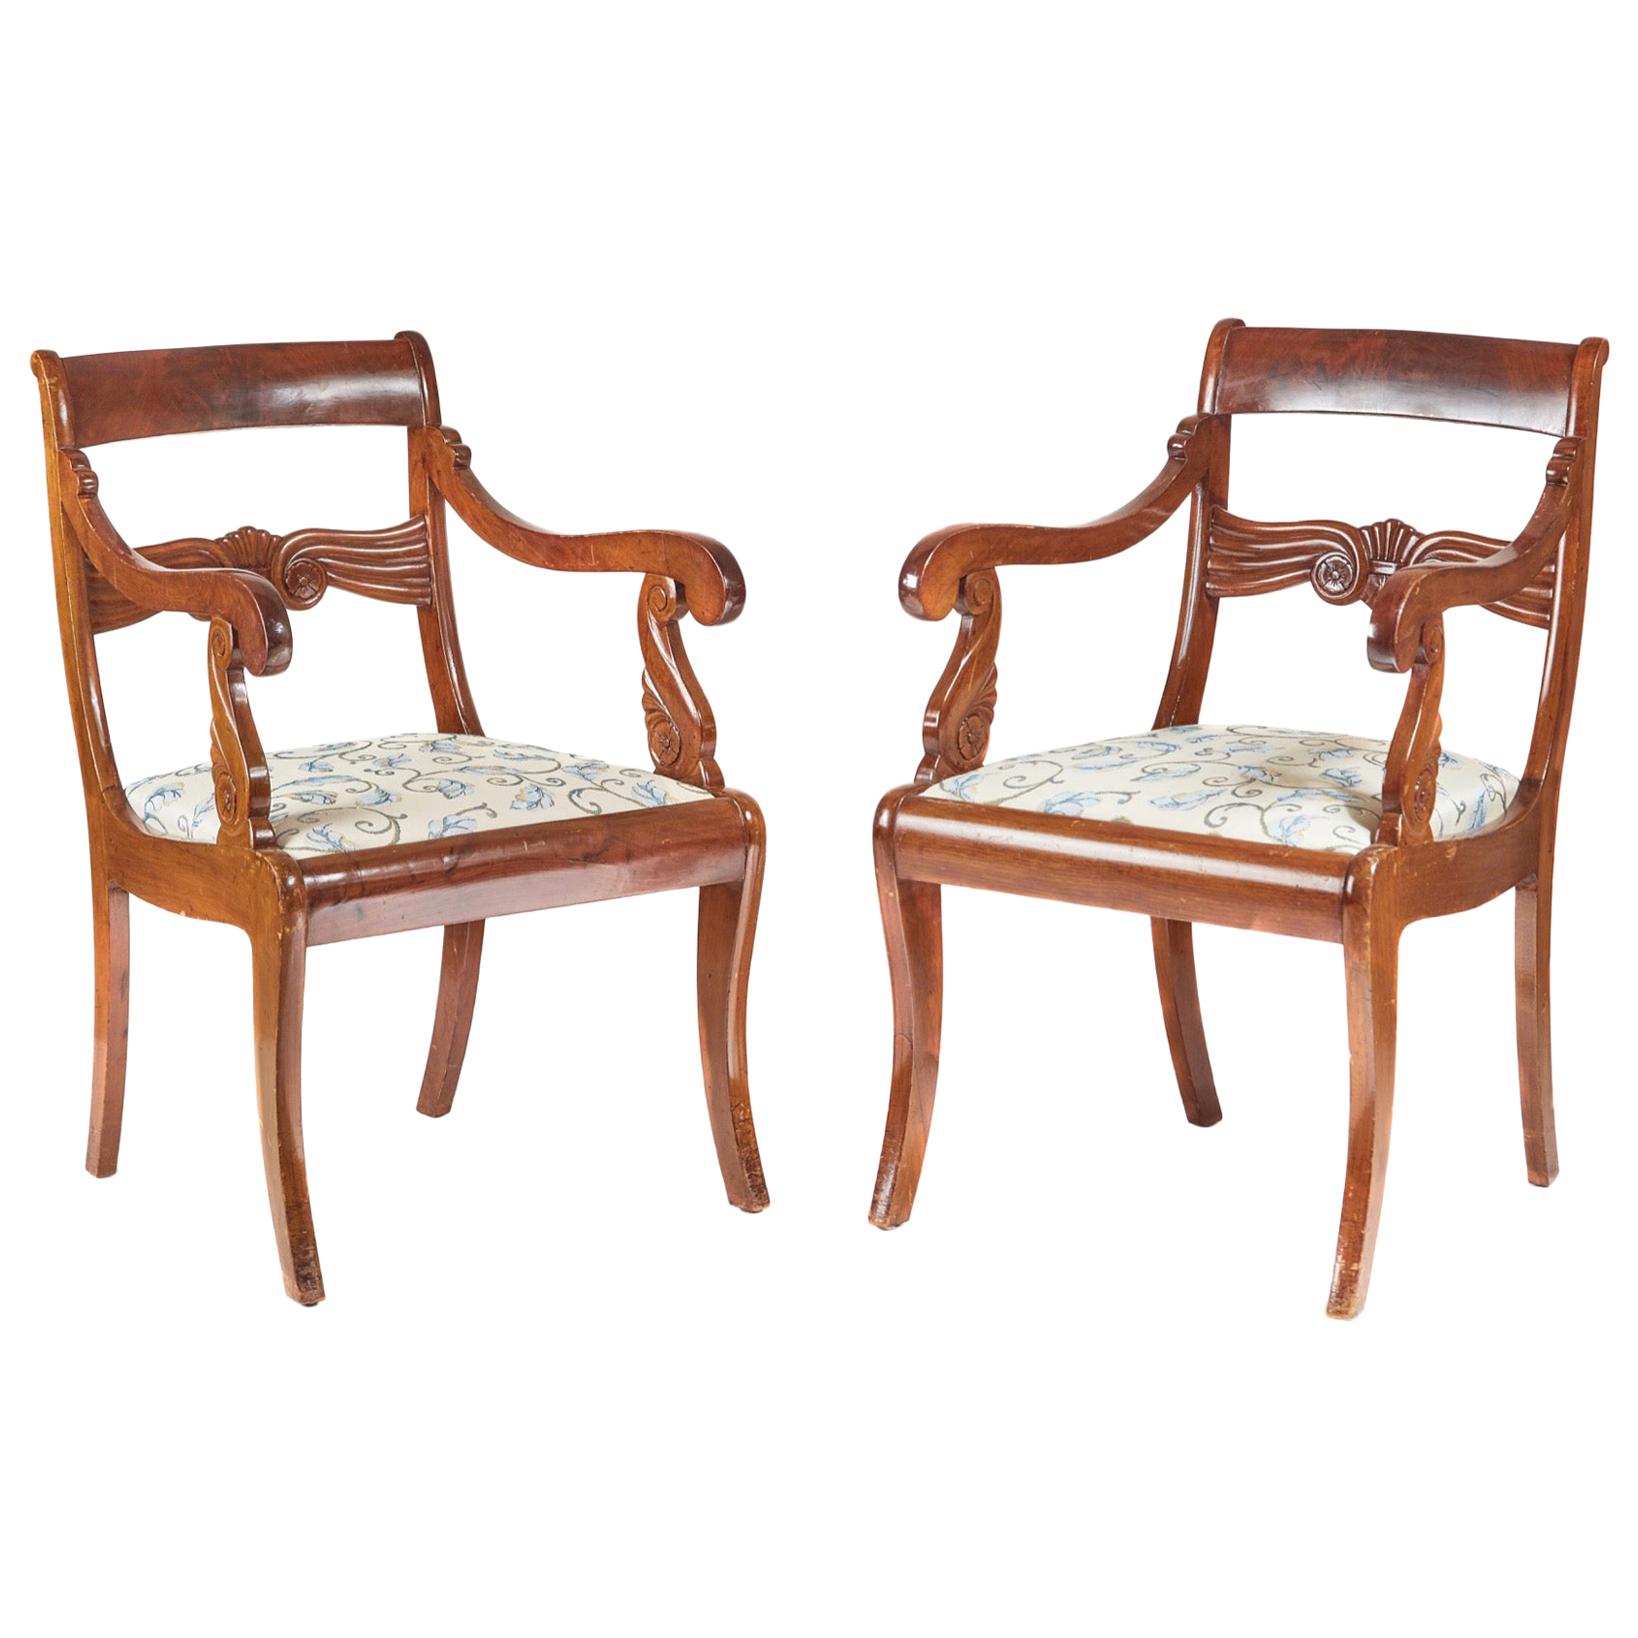 Ancienne paire de chaises de sculpteur françaises en acajou, vers 1880